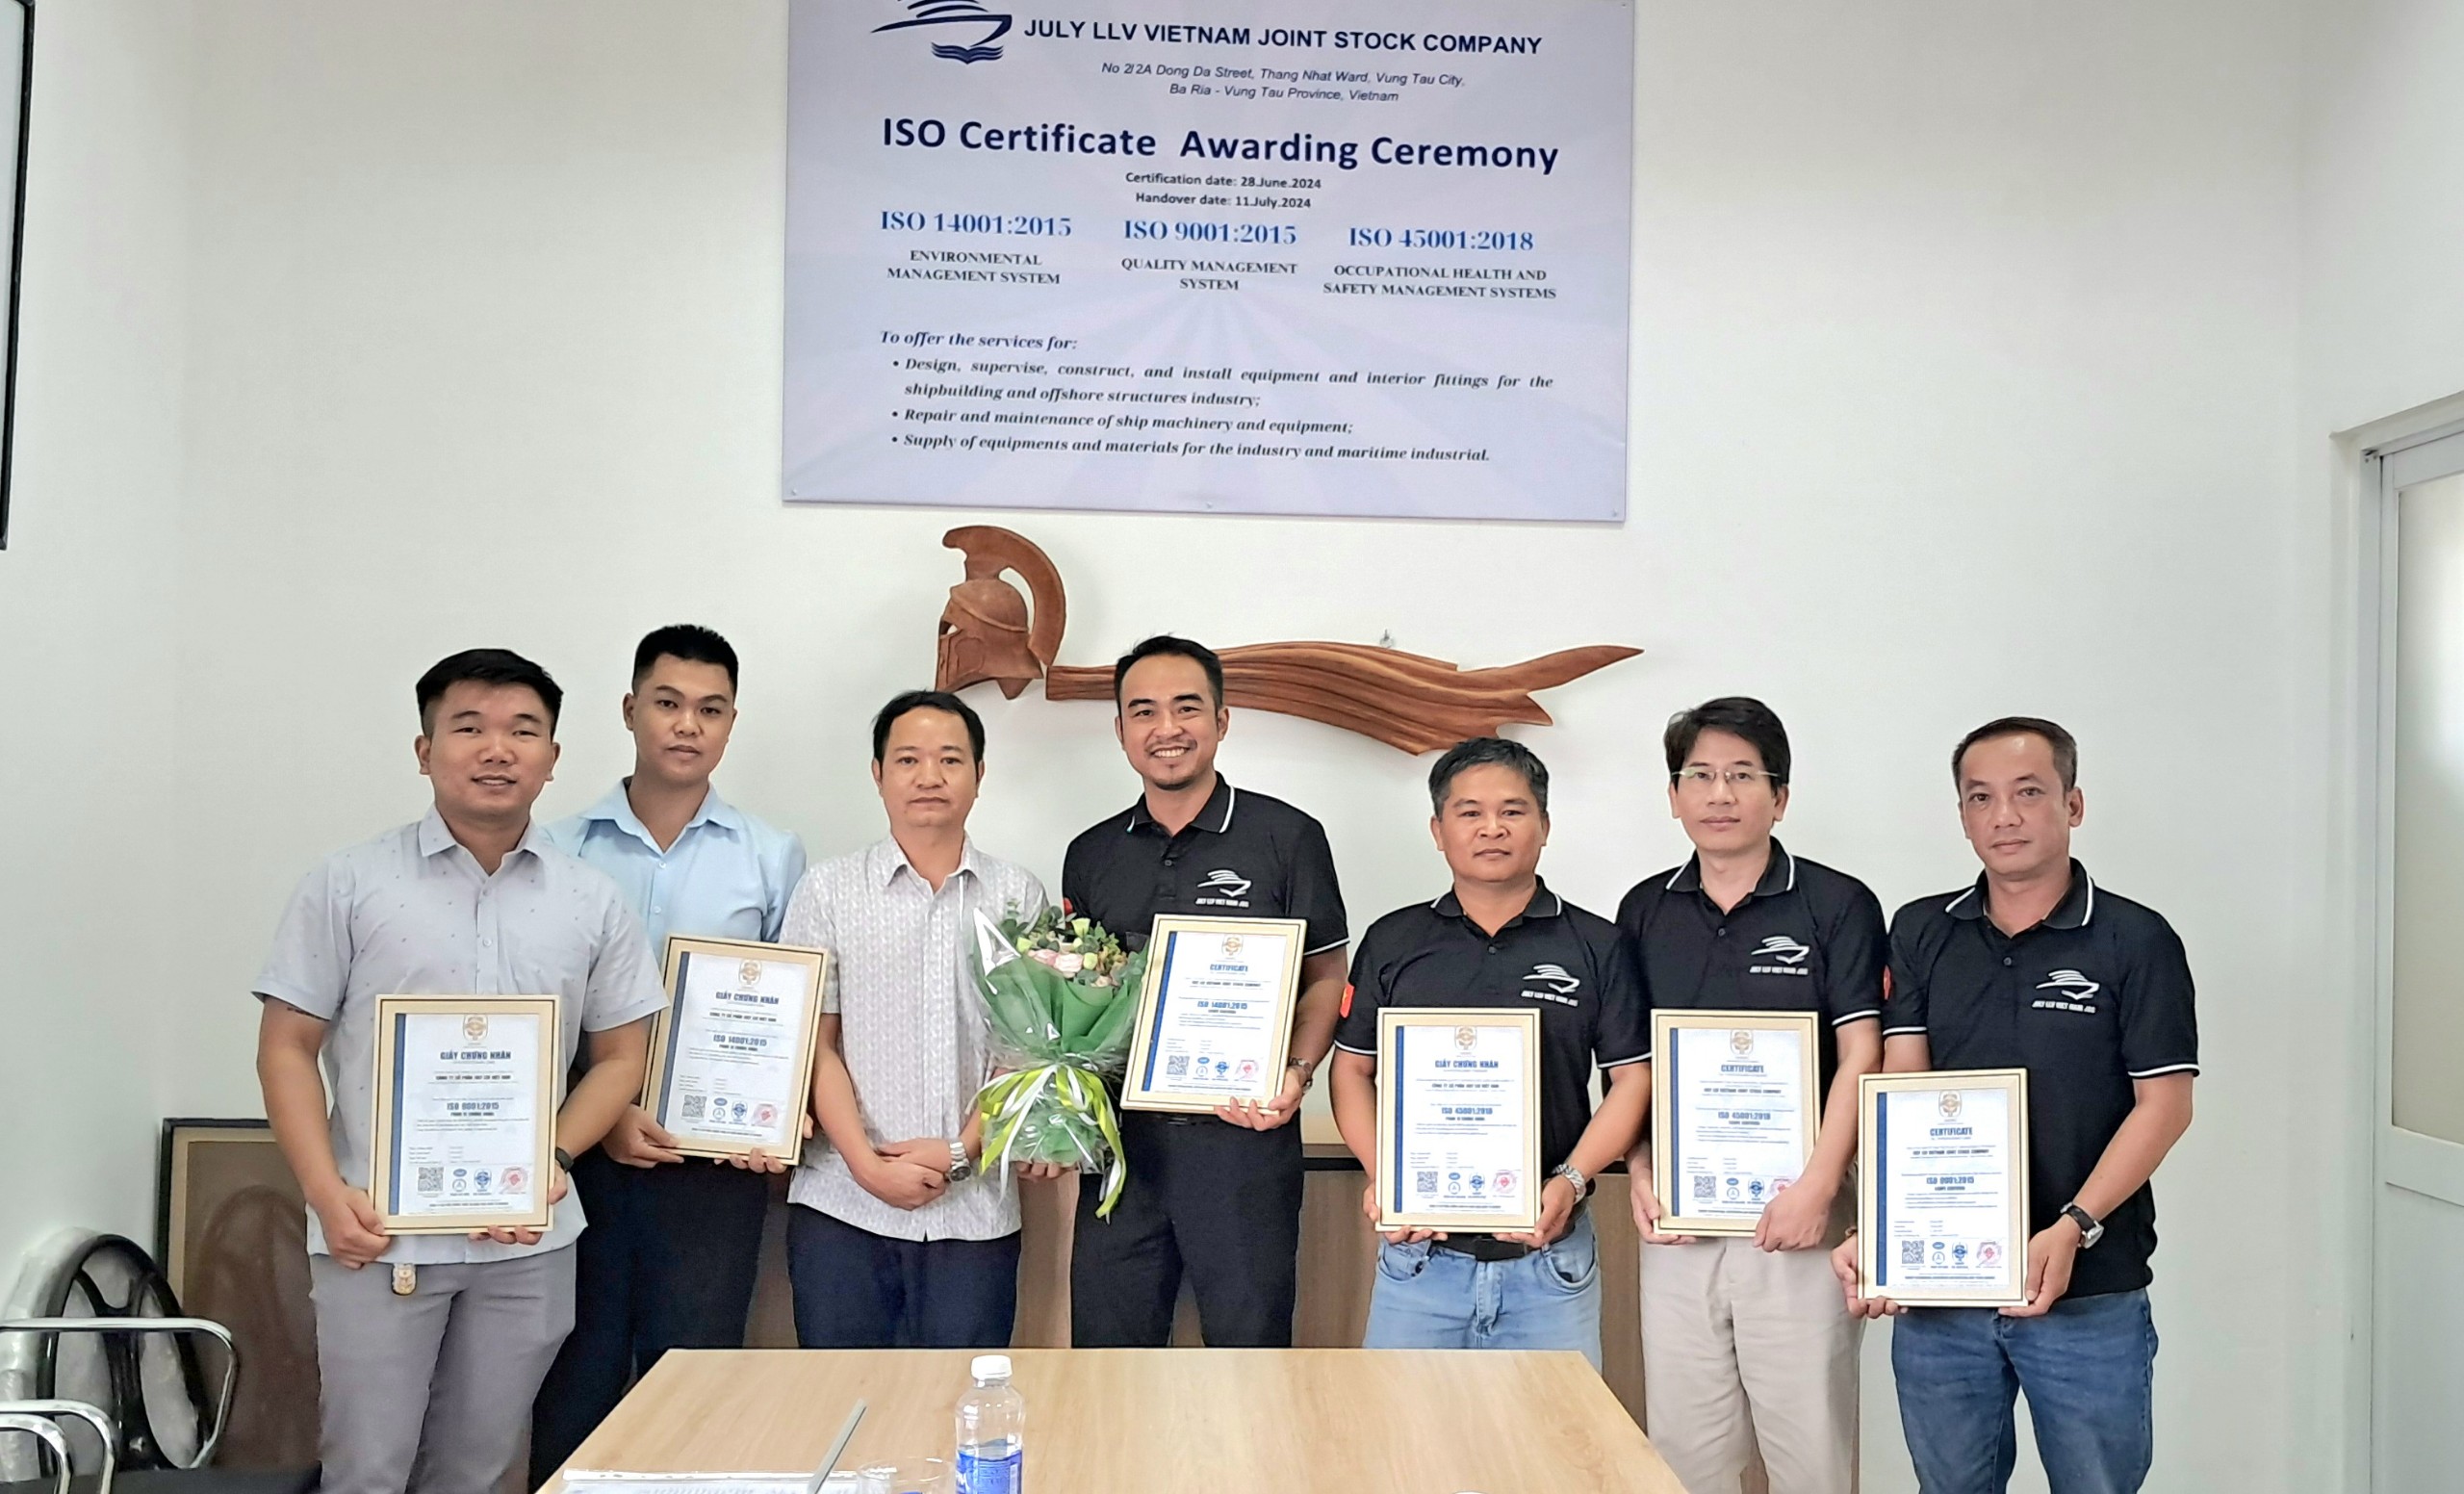 ISOCERT Trao Bộ 3 Chứng Nhận ISO 9001, ISO 14001 và ISO 45001 Cho Công Ty July LLV Việt Nam